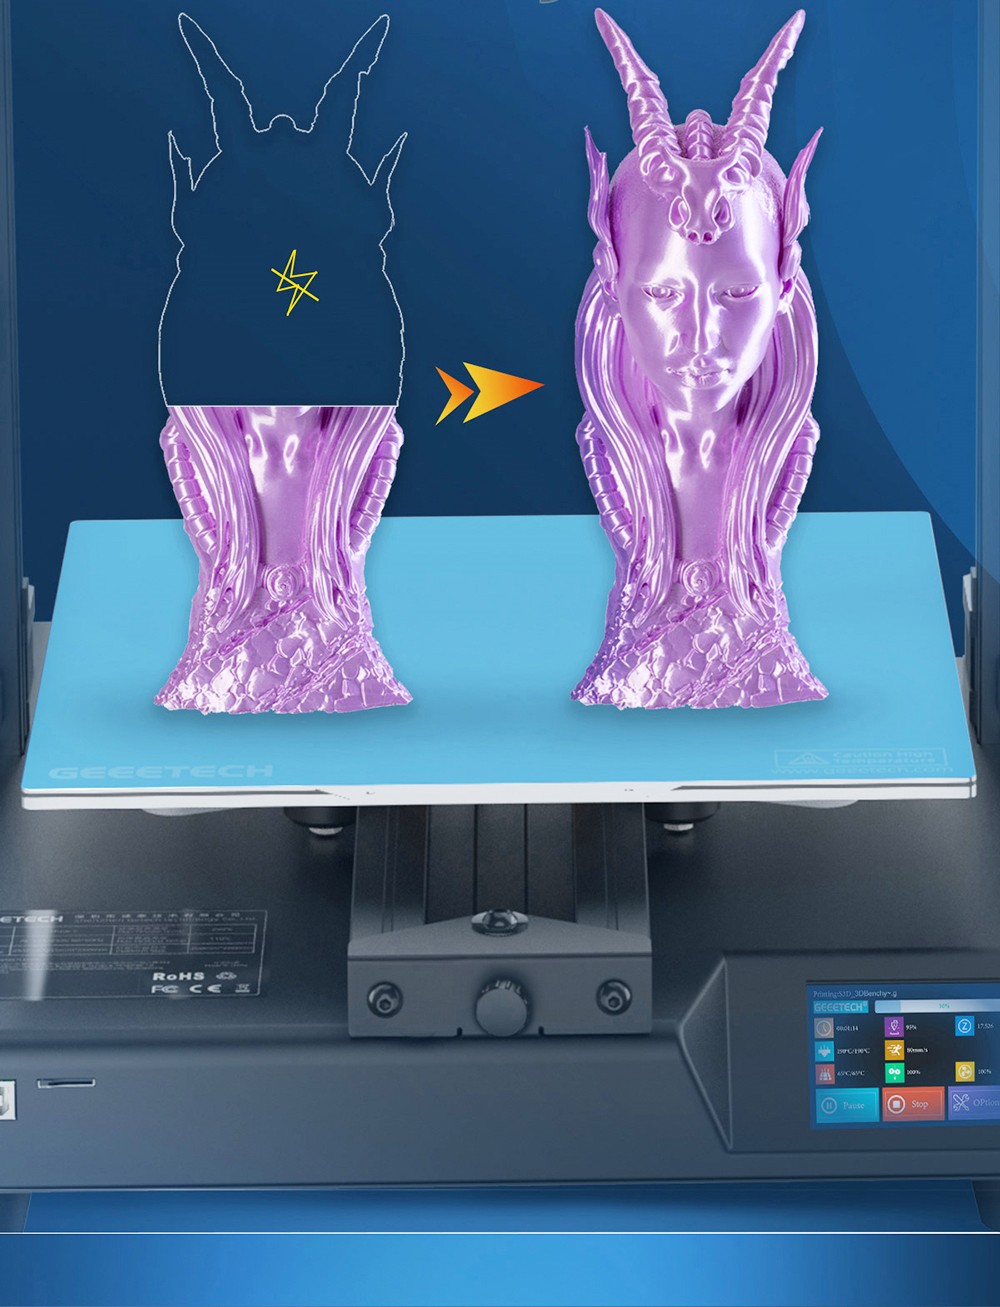 Geeetech Mizar S 3D printer